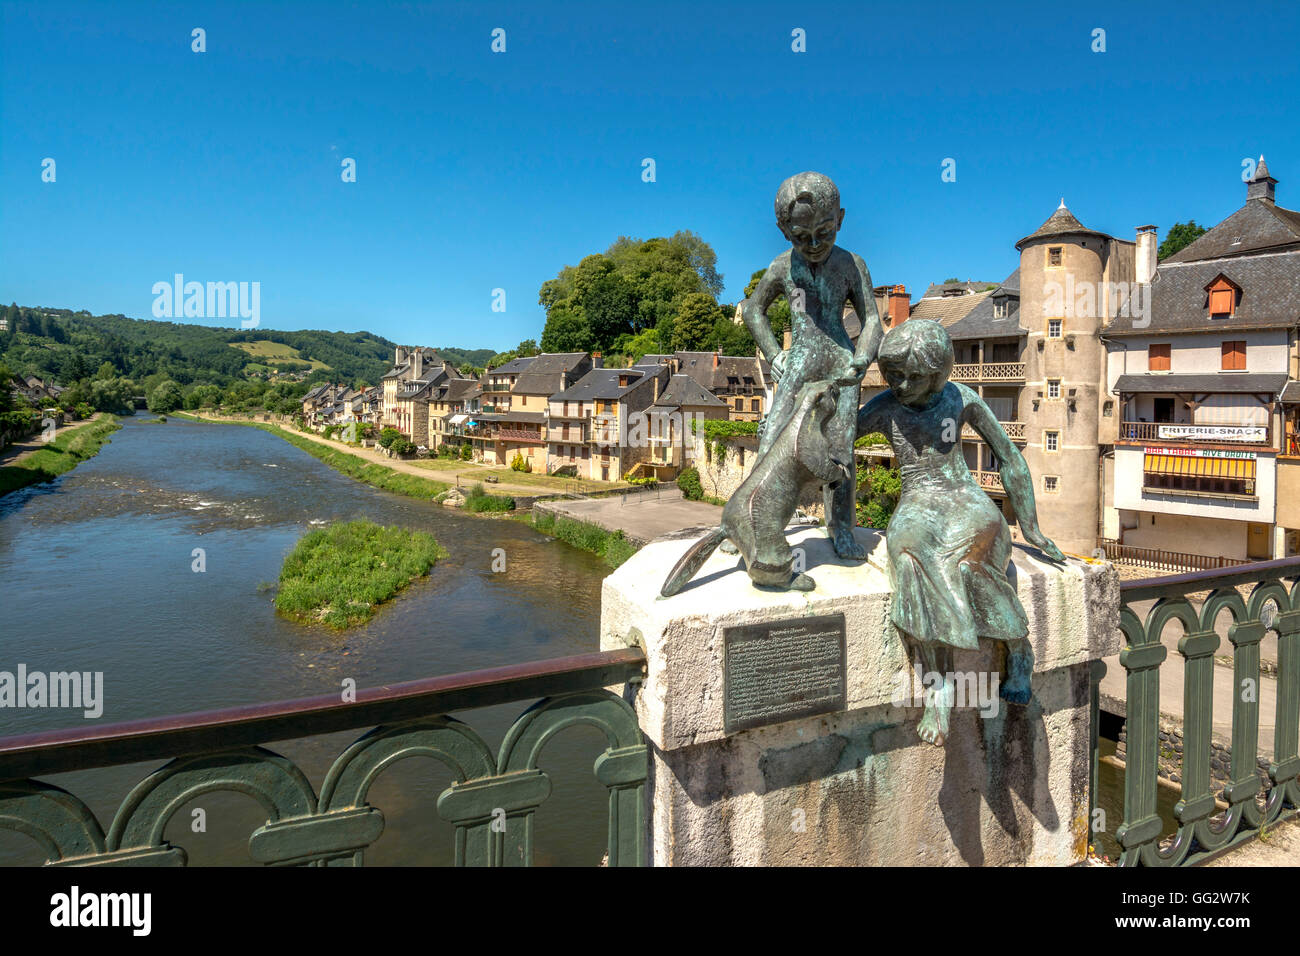 Village de Saint Geniez d'Olt sur la rivière Lot, la statue de marmottes.  L'Aveyron. France Photo Stock - Alamy